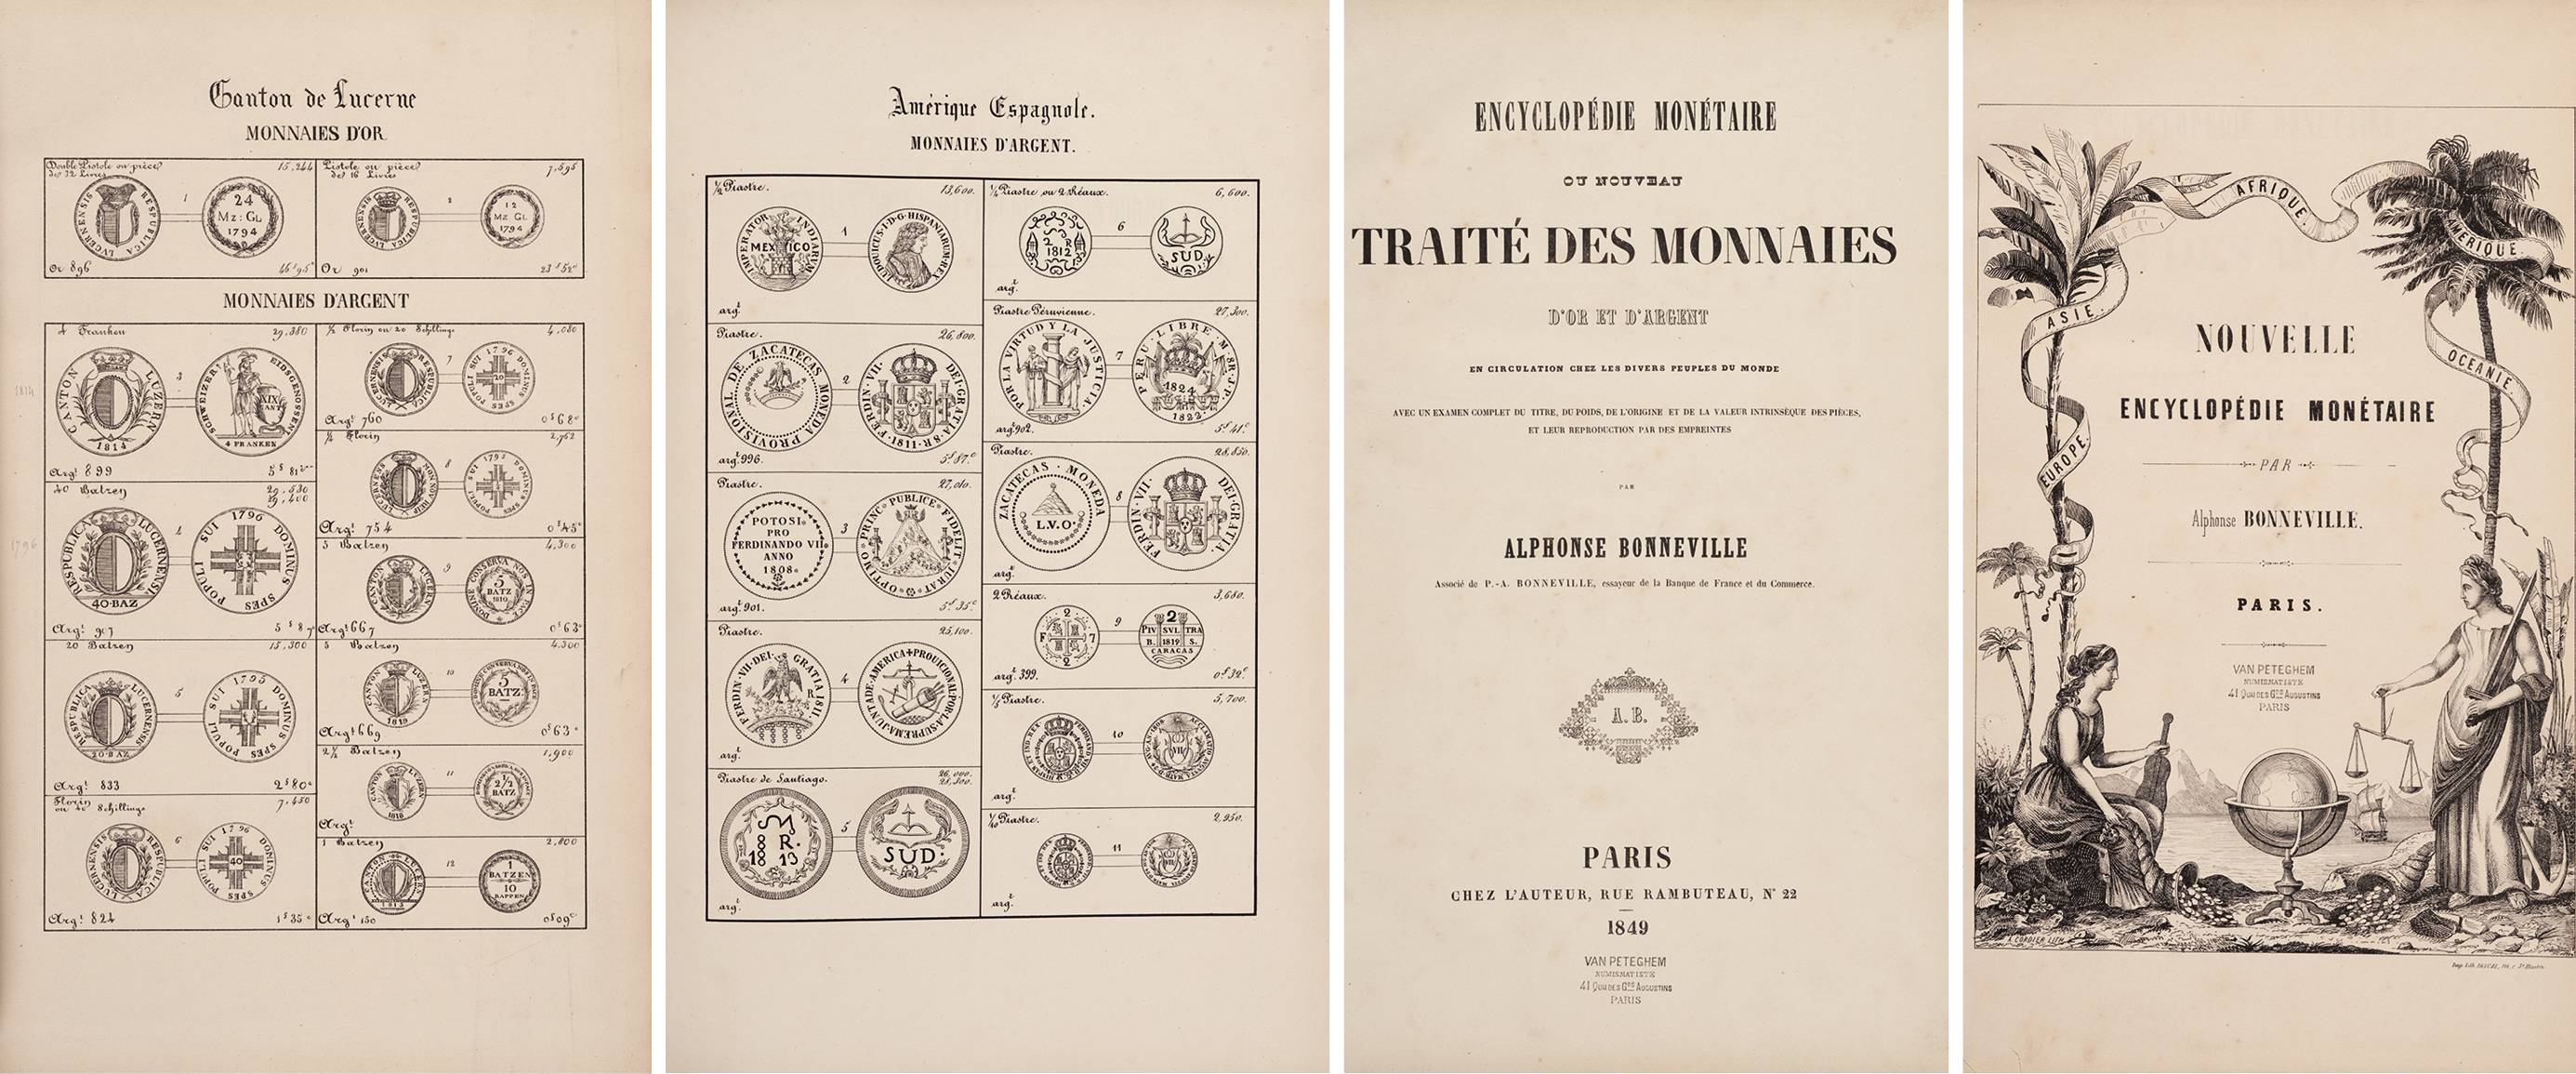 全球货币版画集 1849年巴黎 Chez l'auteur 出版